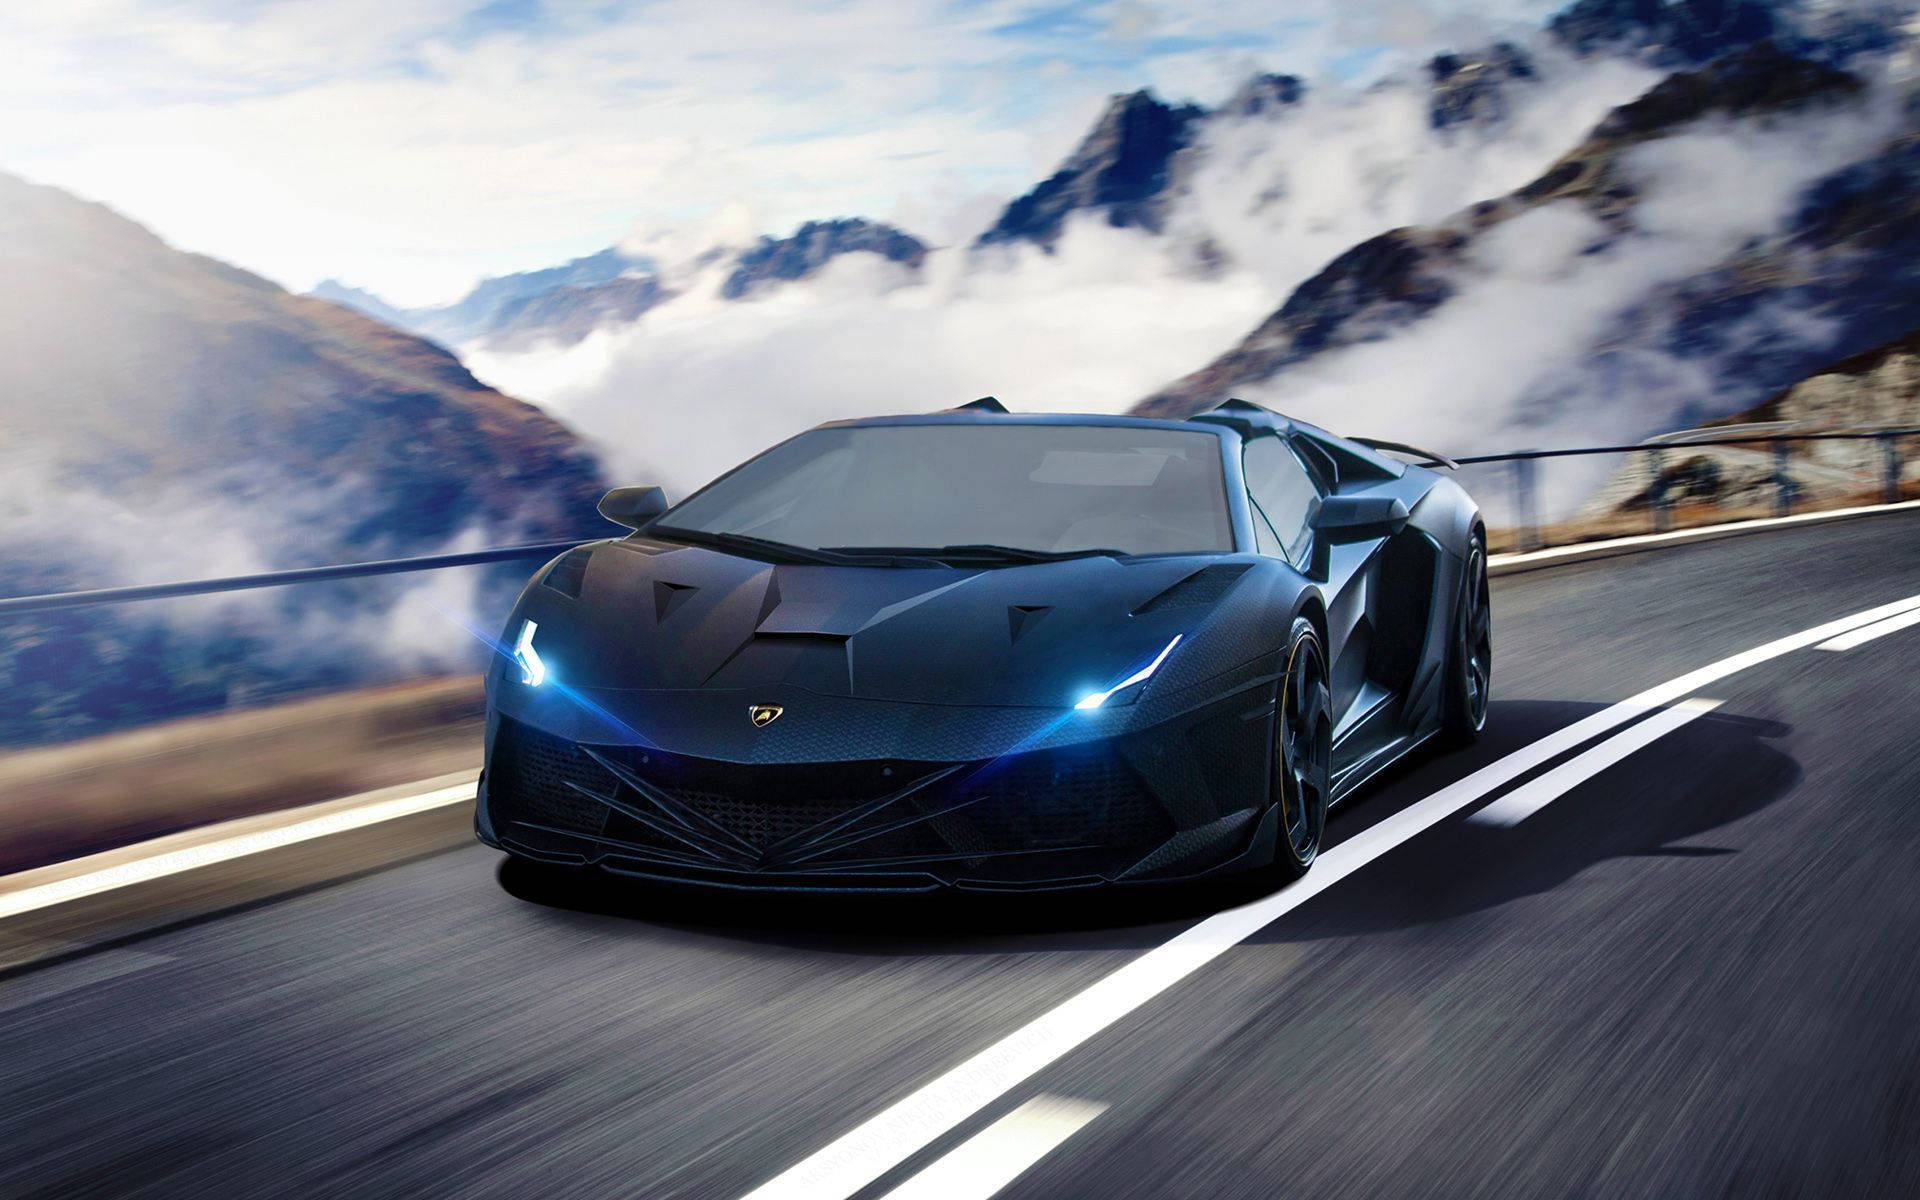 Ultramodern Lamborghini Aventador - The Pinnacle Of Super Cars